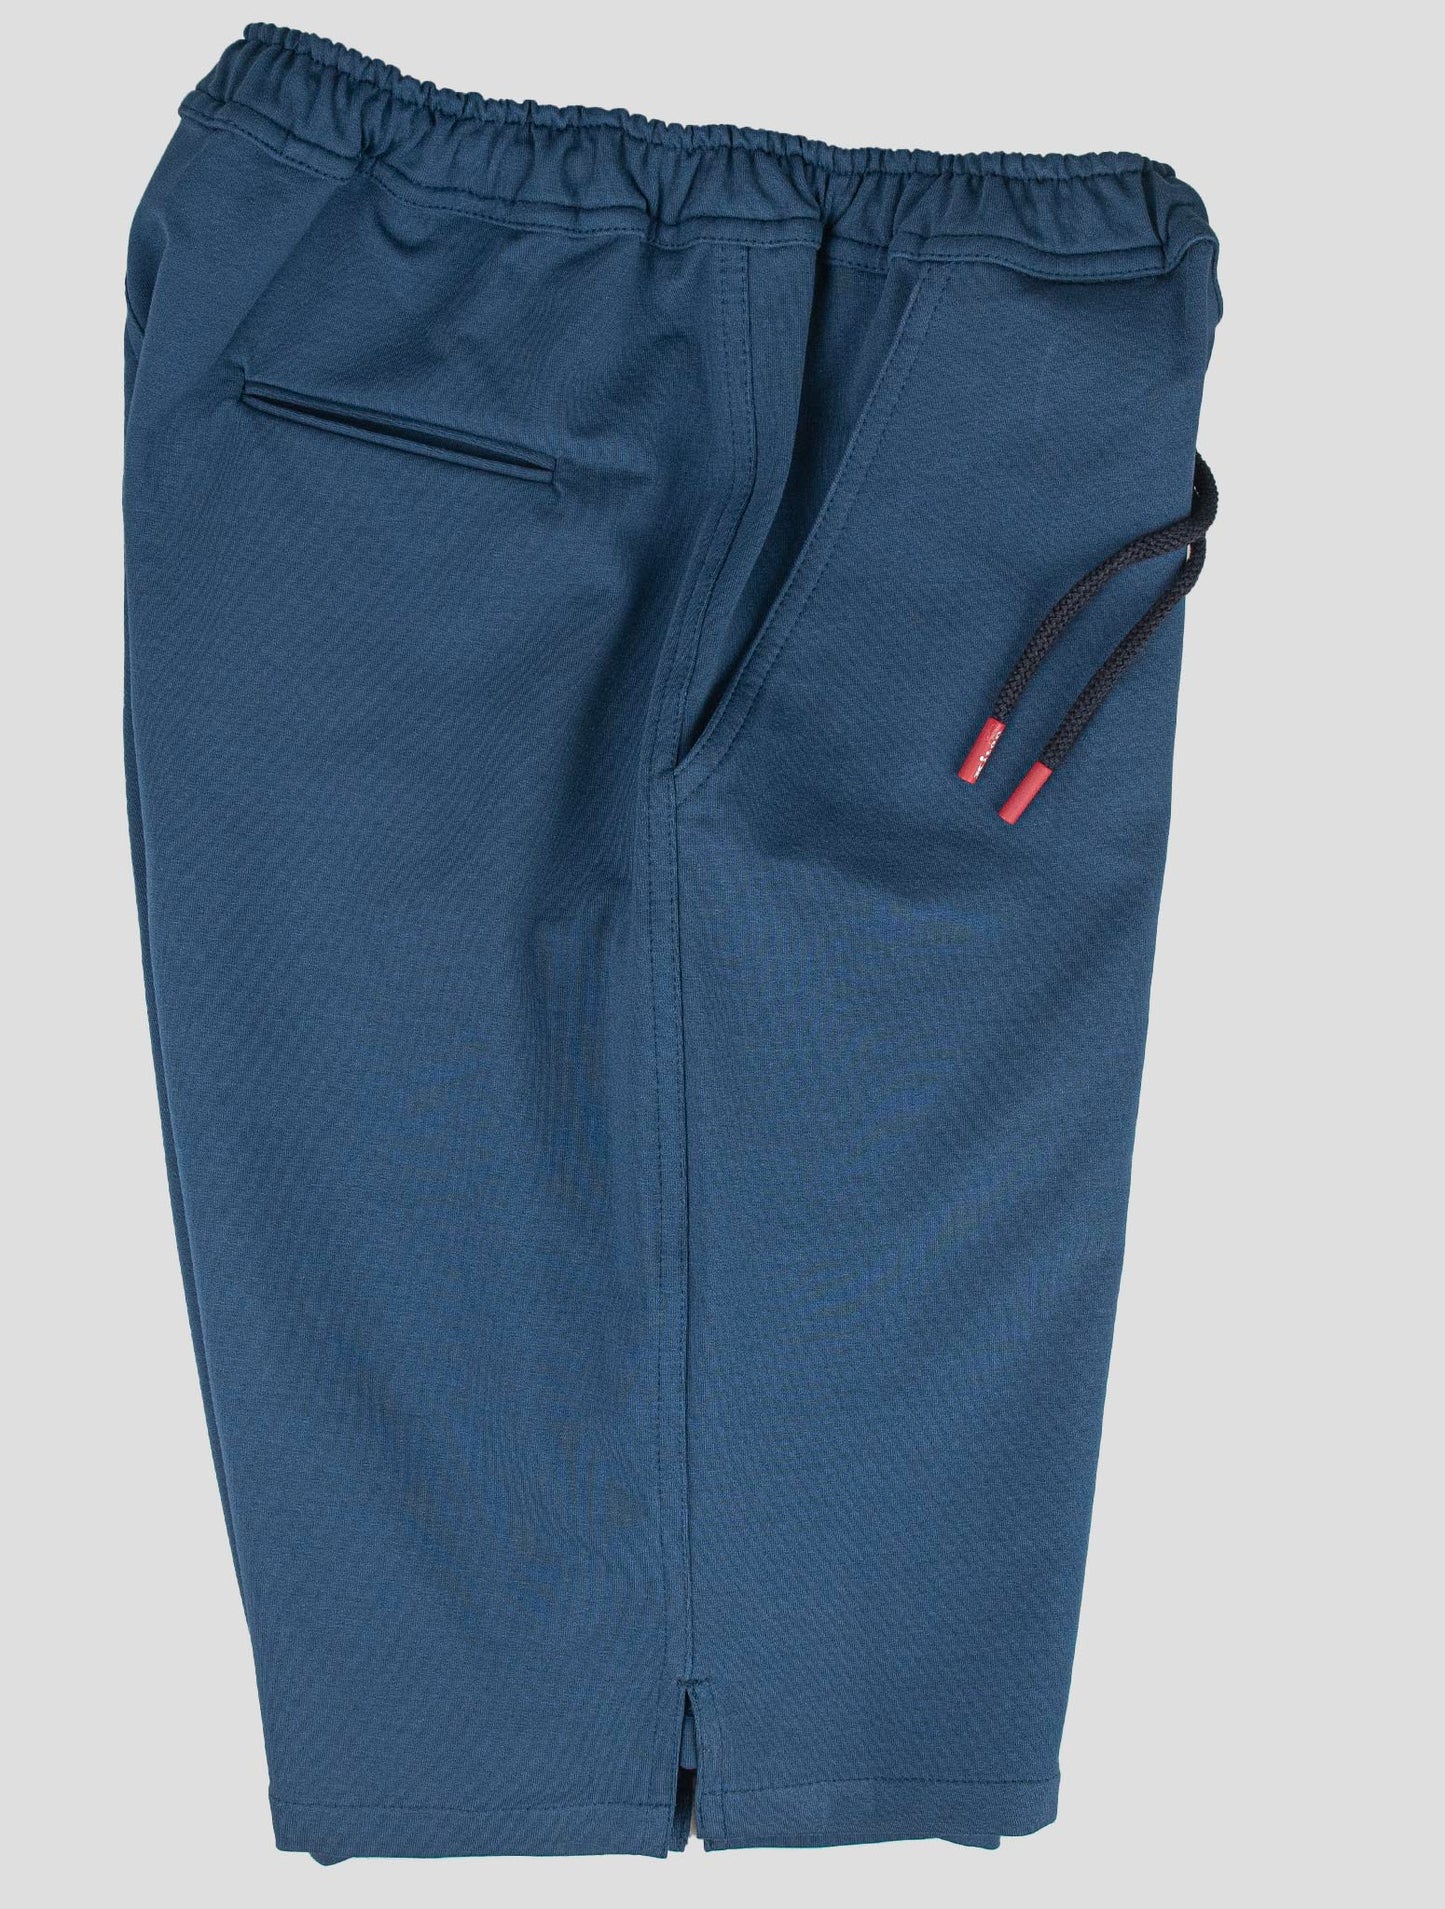 Traje a juego Kiton-Multicolor Mariano y azul pantalones cortos chándal